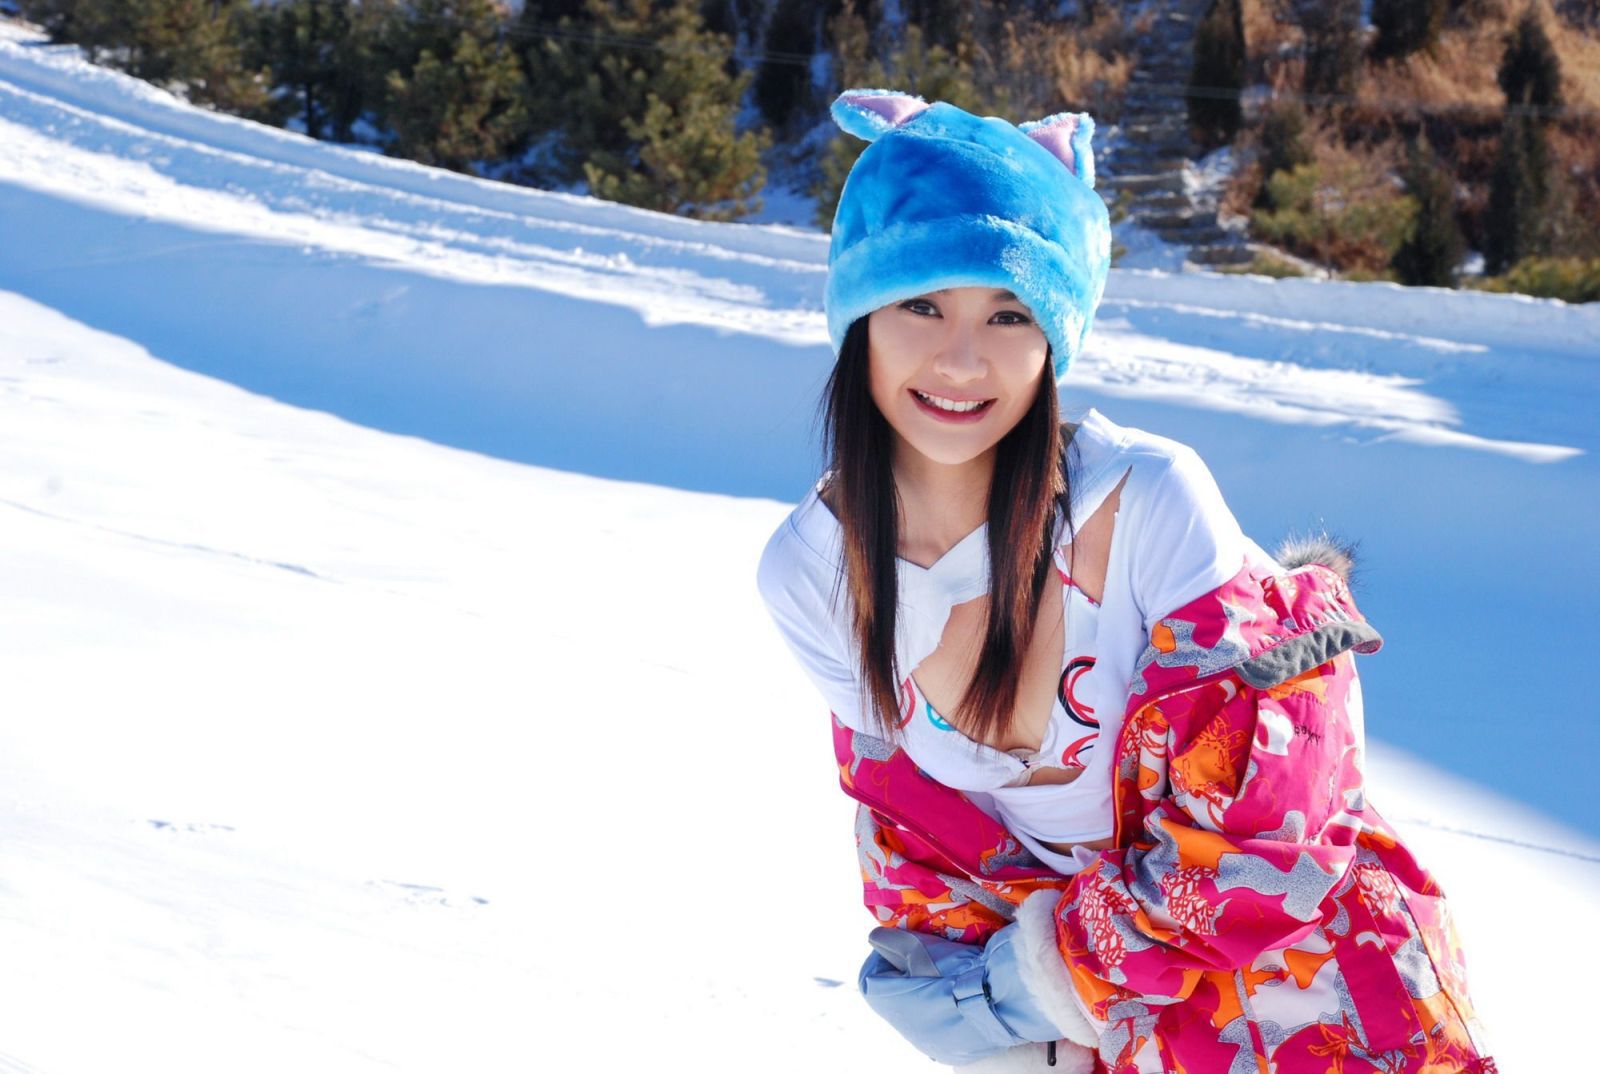 明星美女杨雪-滑雪场摄影套图